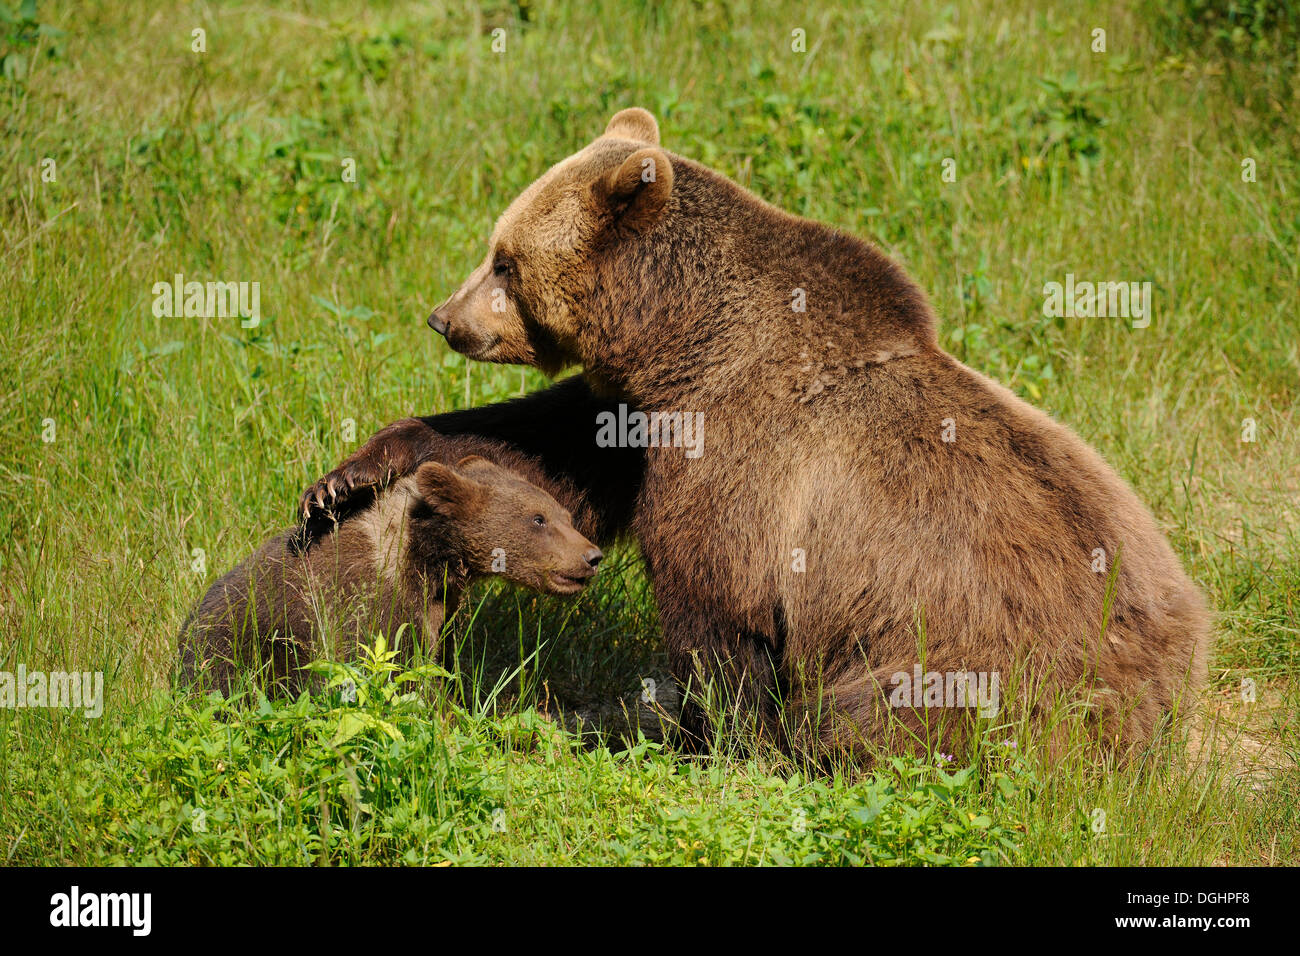 Unión oso pardo (Ursus arctos), el cachorro con la madre, en un recinto de animales, el Parque Nacional del Bosque Bávaro, Baviera, Alemania Foto de stock